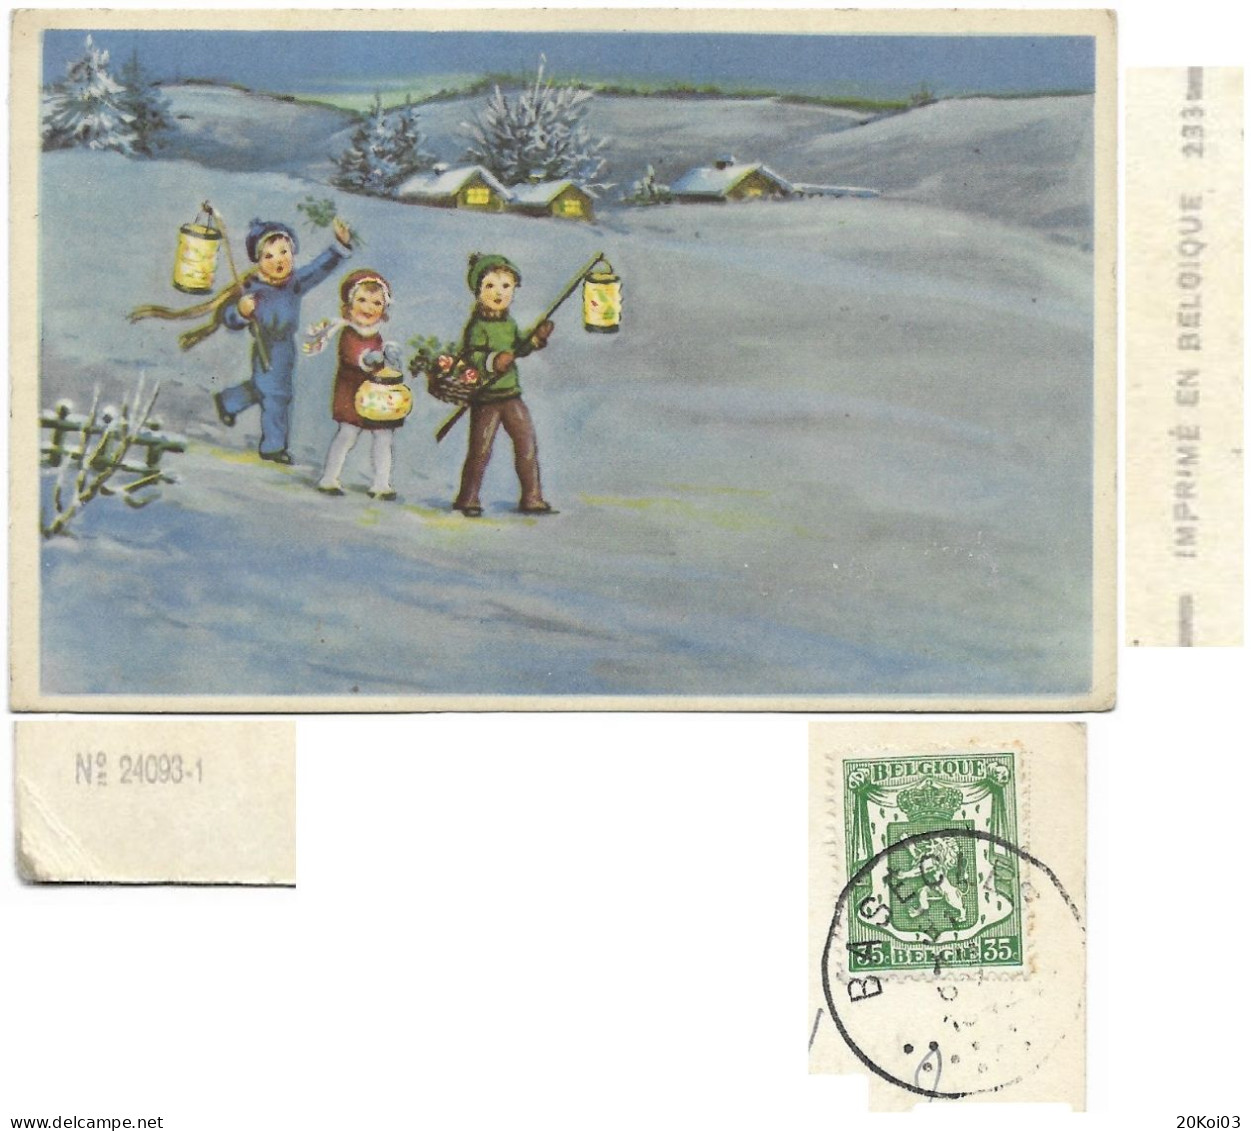 Enfants D'hiver Au Soir Maisons, Paysage Illustrateurs, N° 24093-1 Vintage_1944 BASECLES 31 Déc Timbre 35c_CPA-TTB - Gruppi Di Bambini & Famiglie